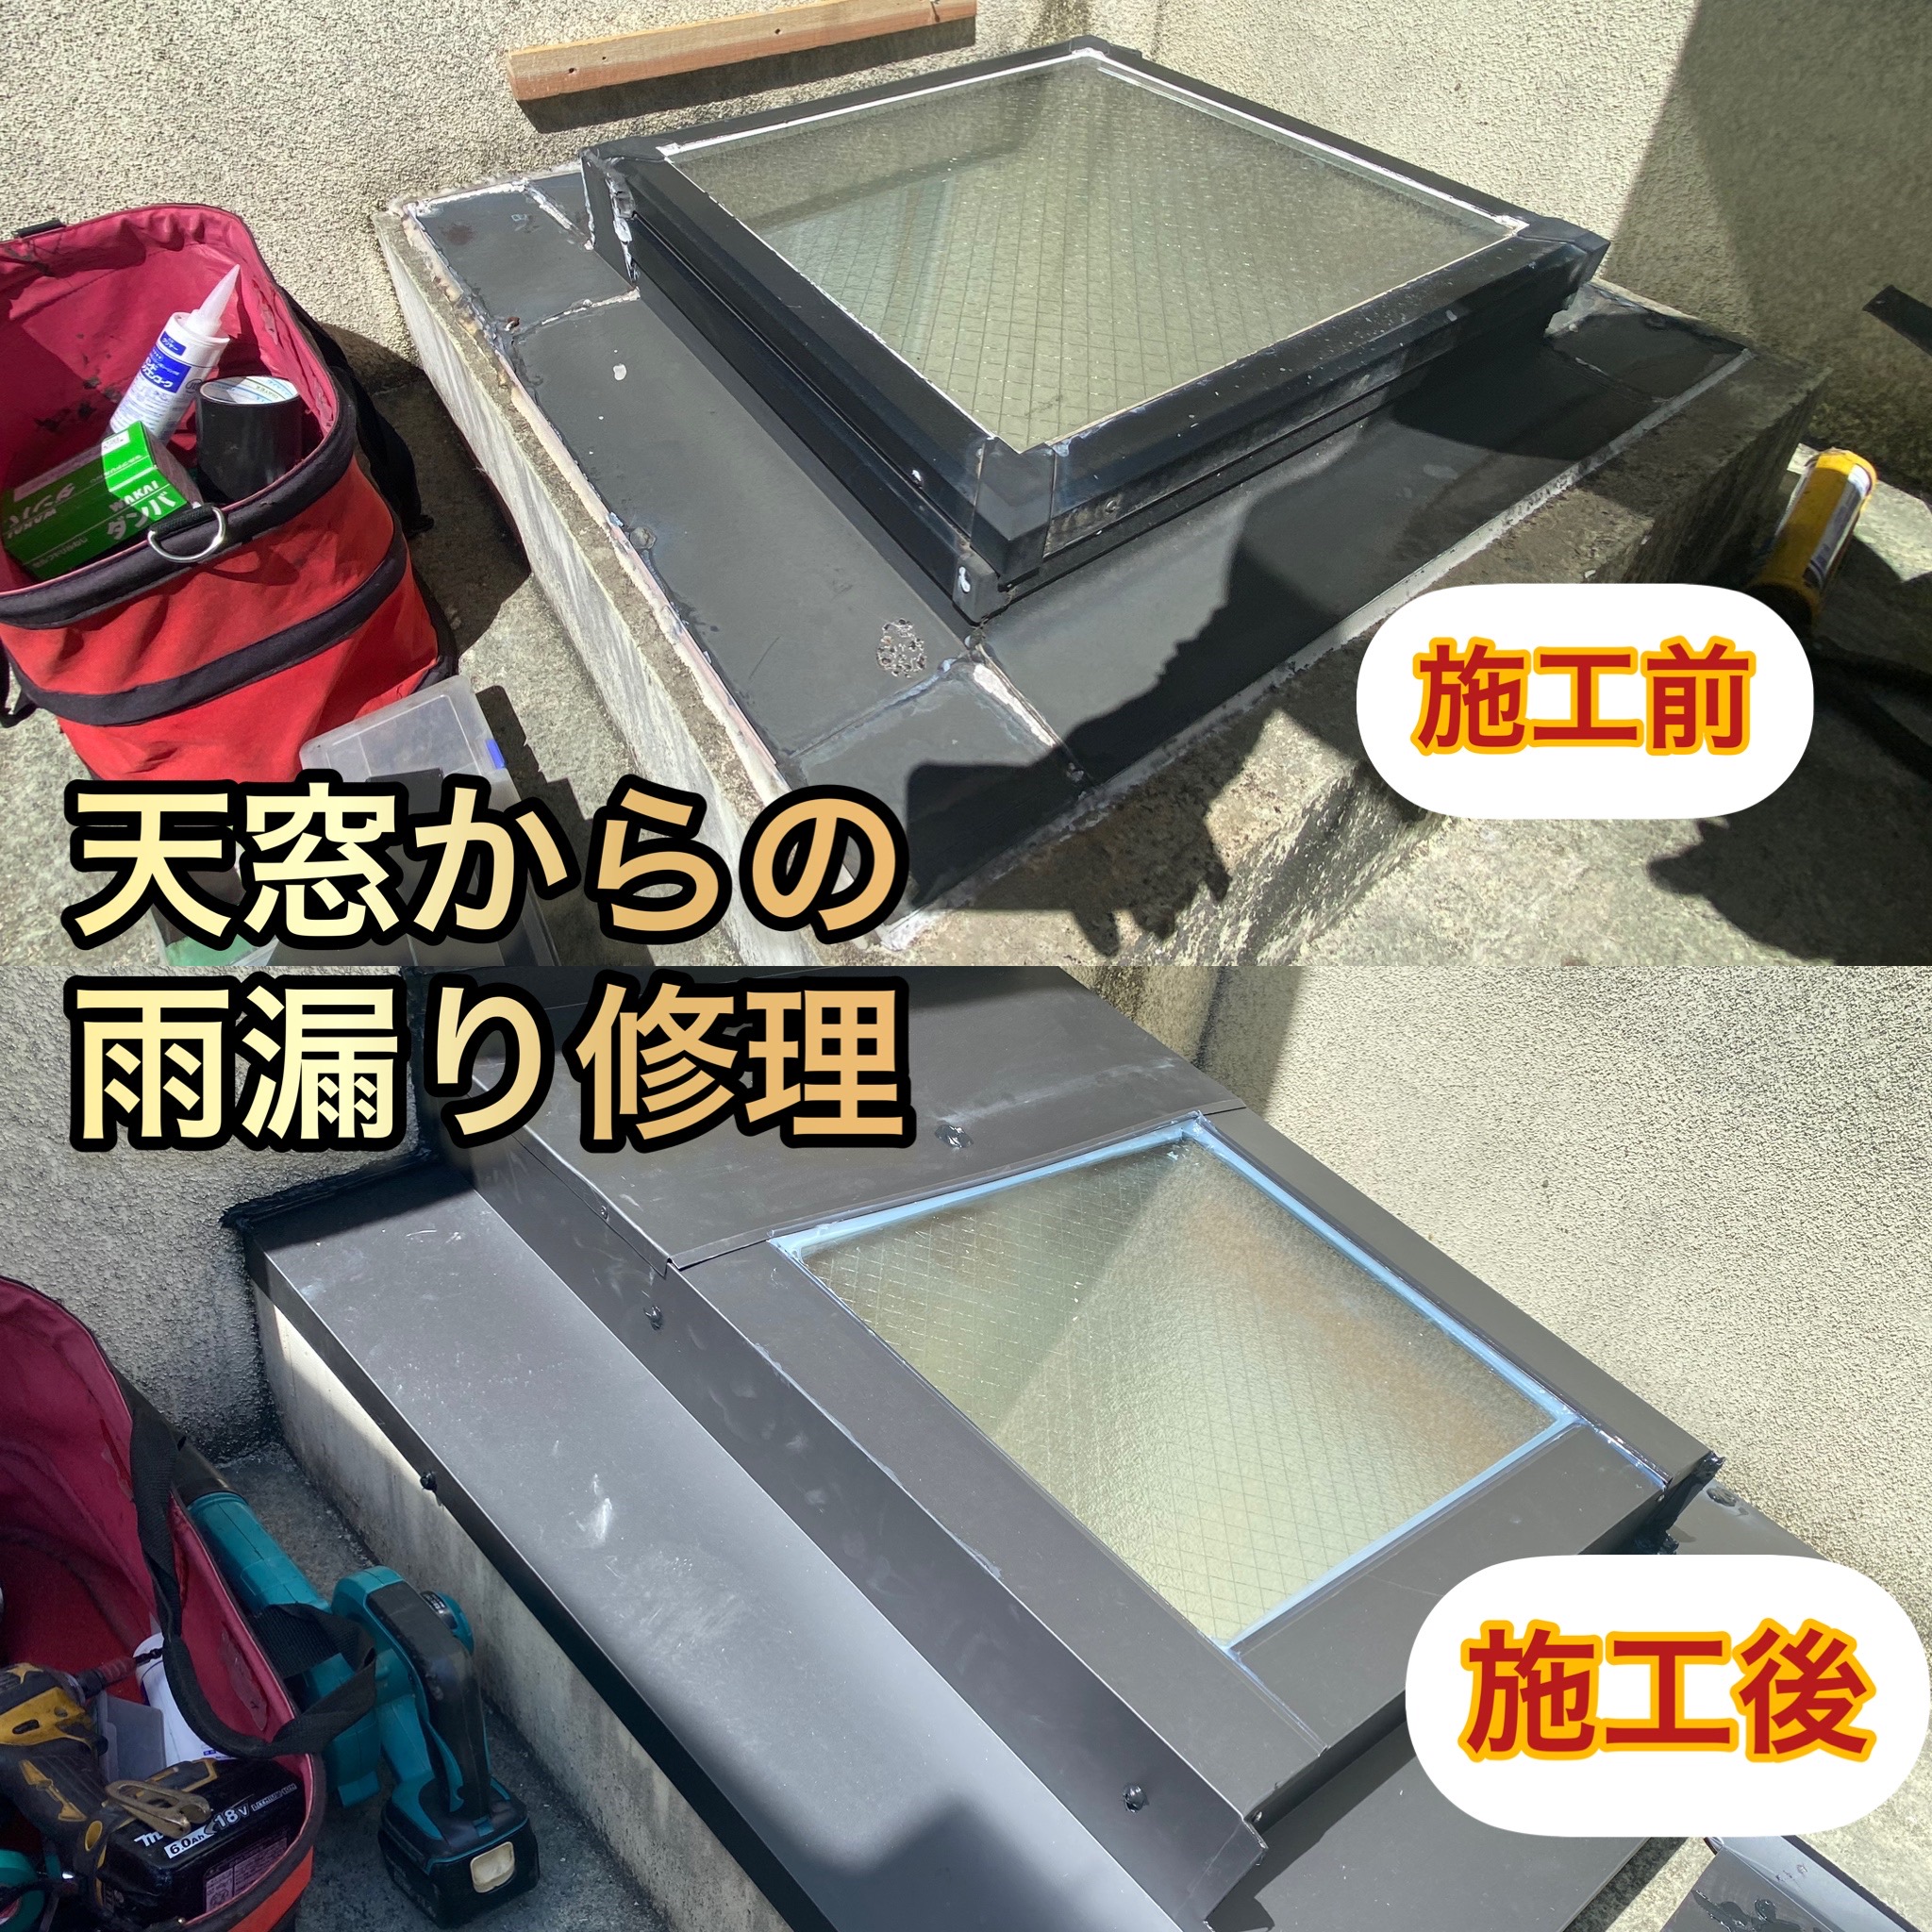 奈良県奈良市・天窓からの雨漏り修理工事